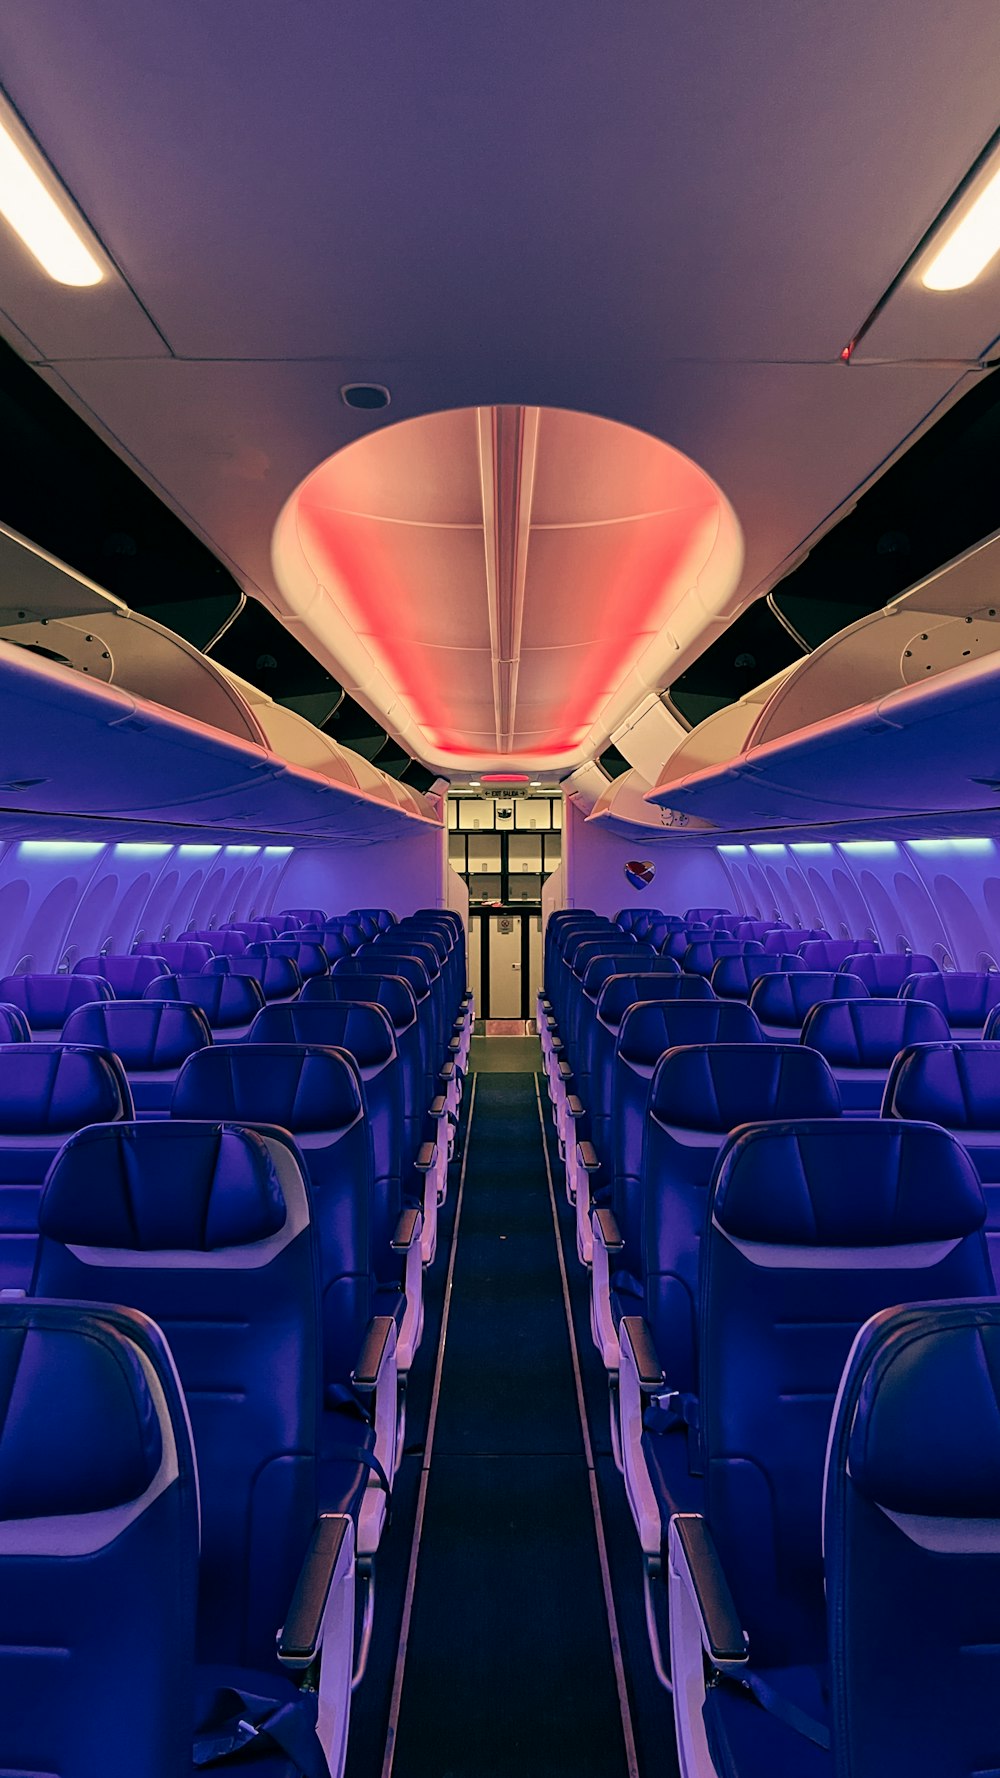 das Innere eines Flugzeugs mit blauen Sitzen